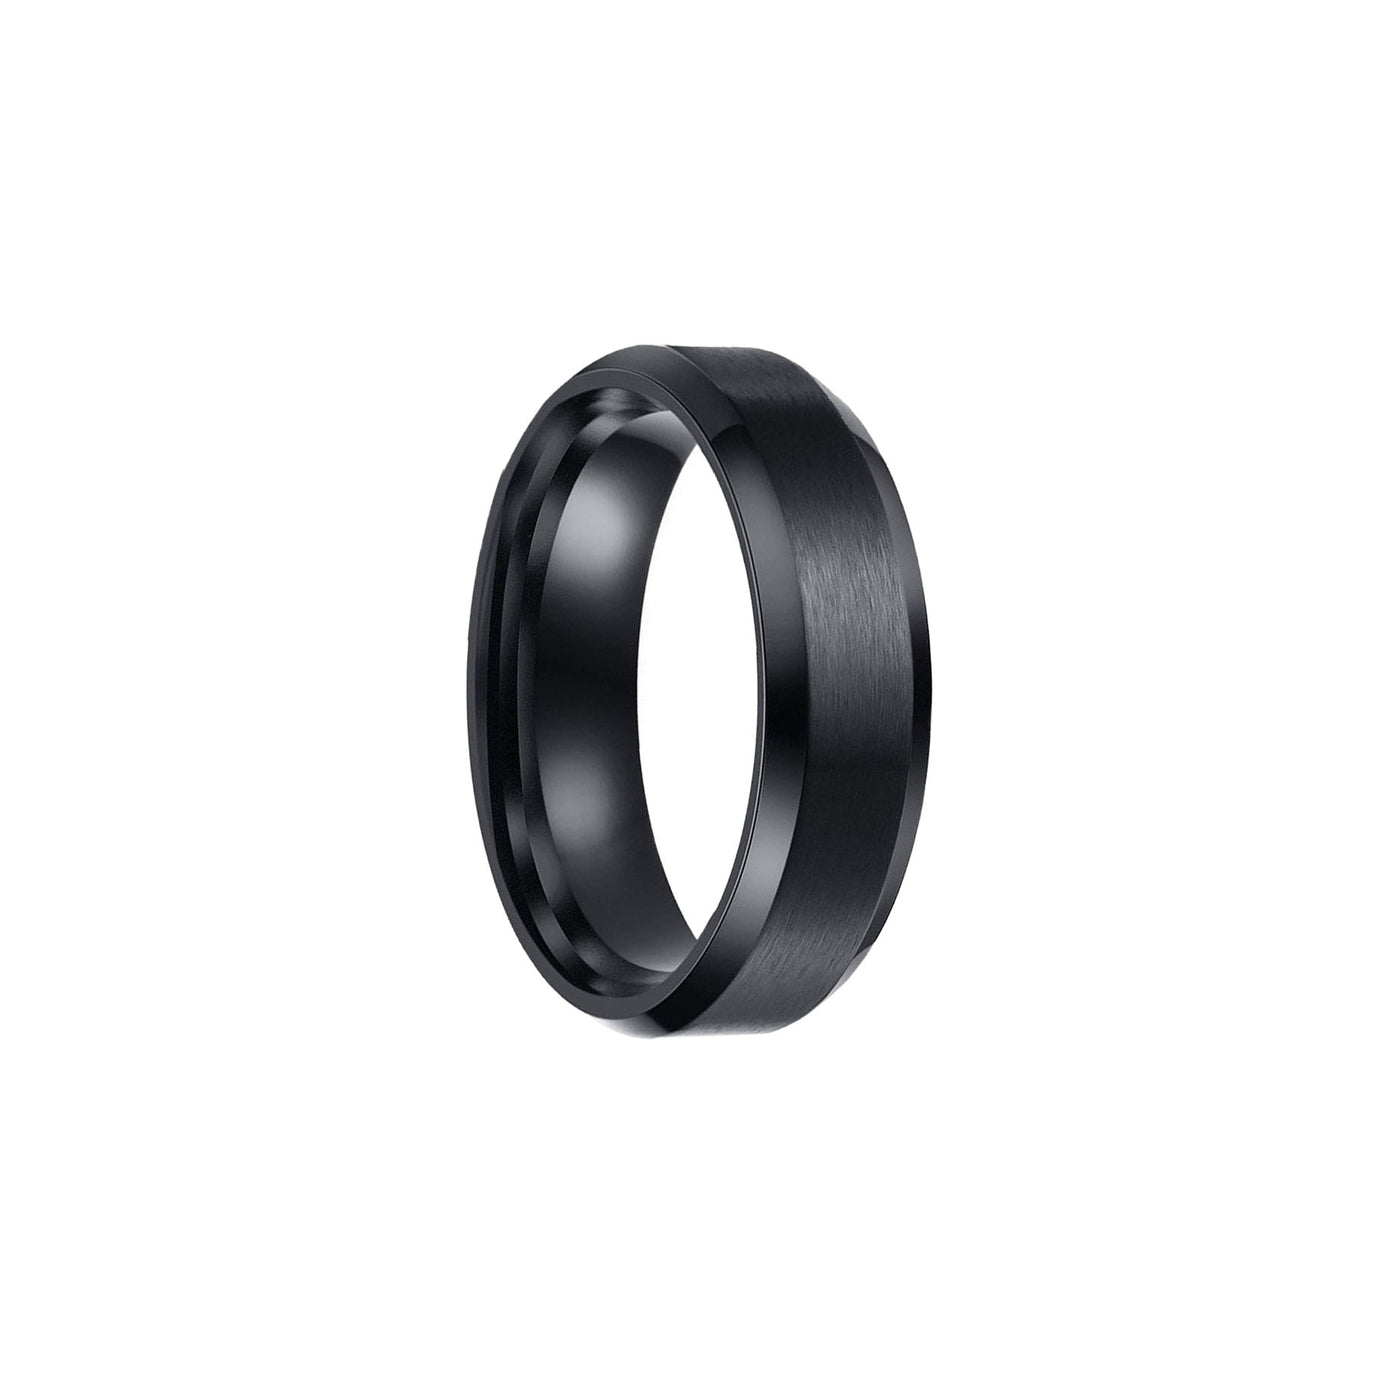 Brushed black steel ring 6mm